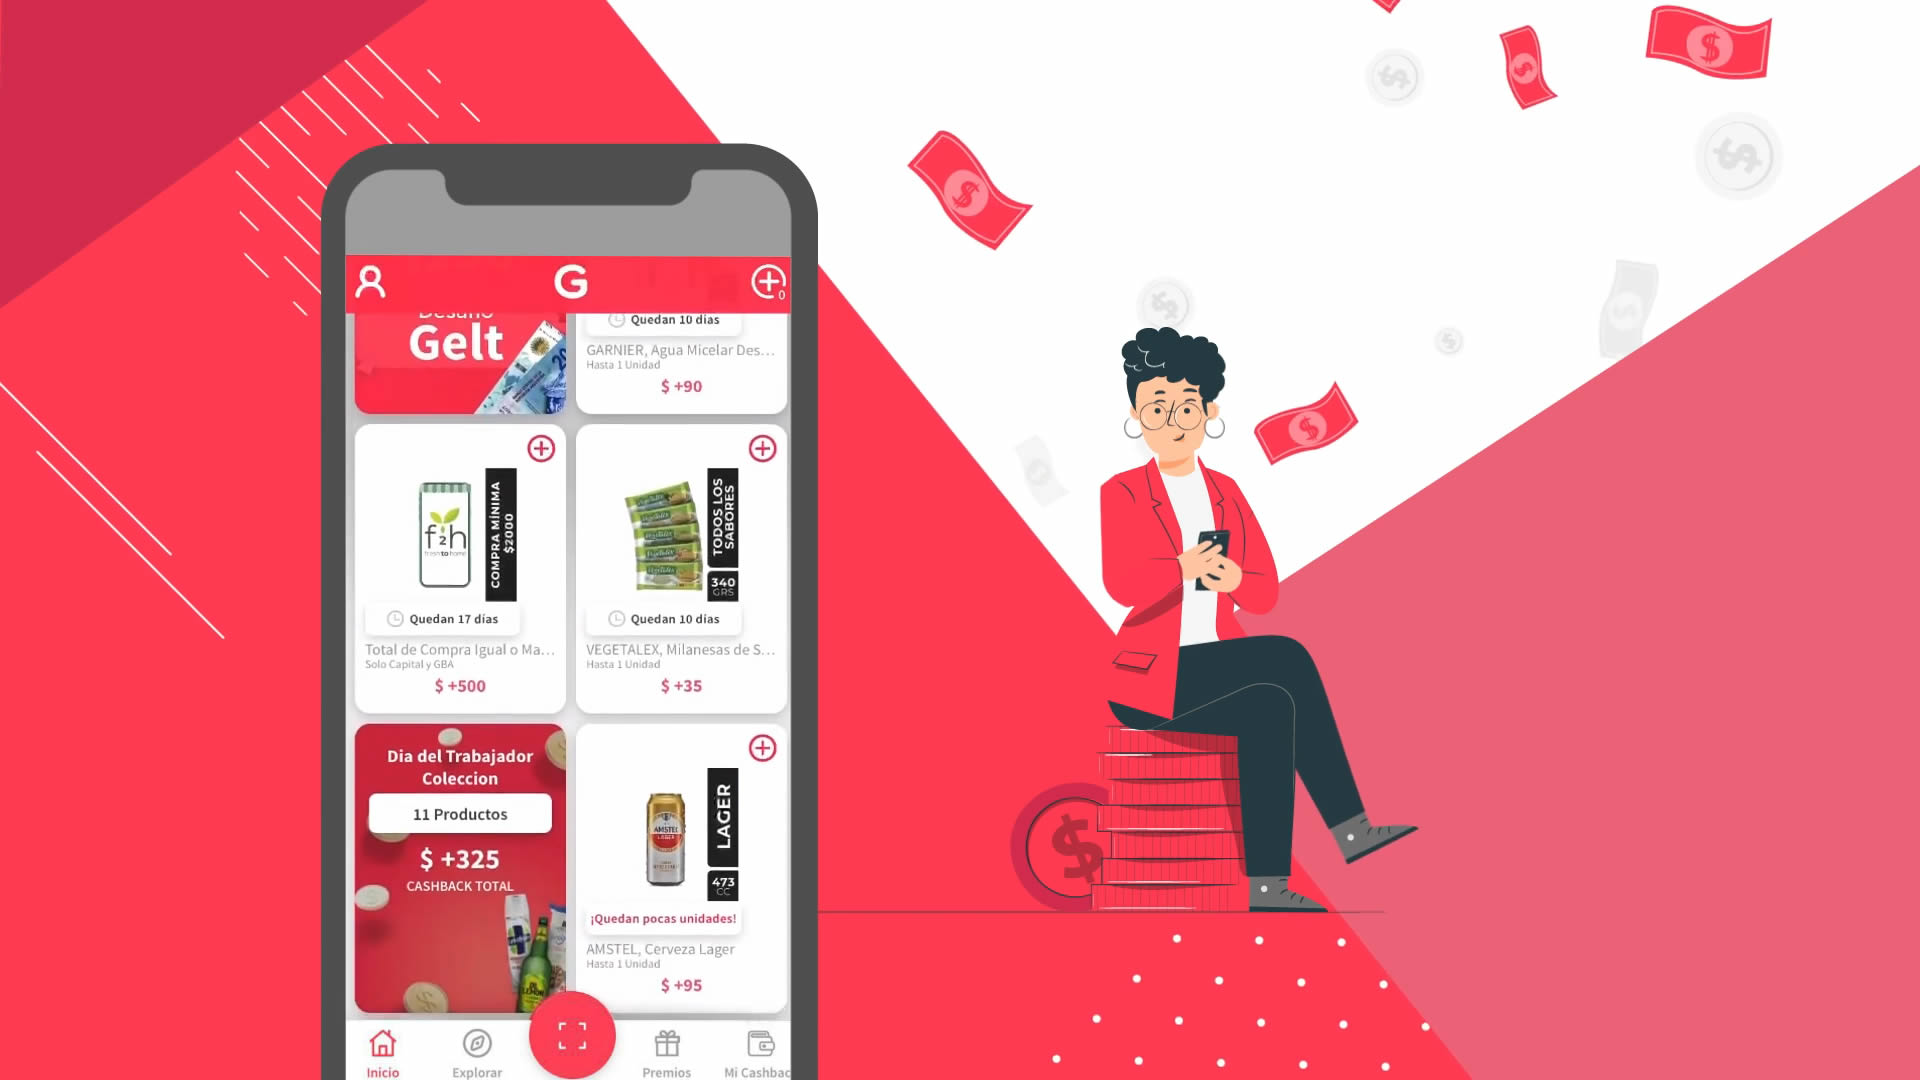 Gelt, a cash-back mobile app